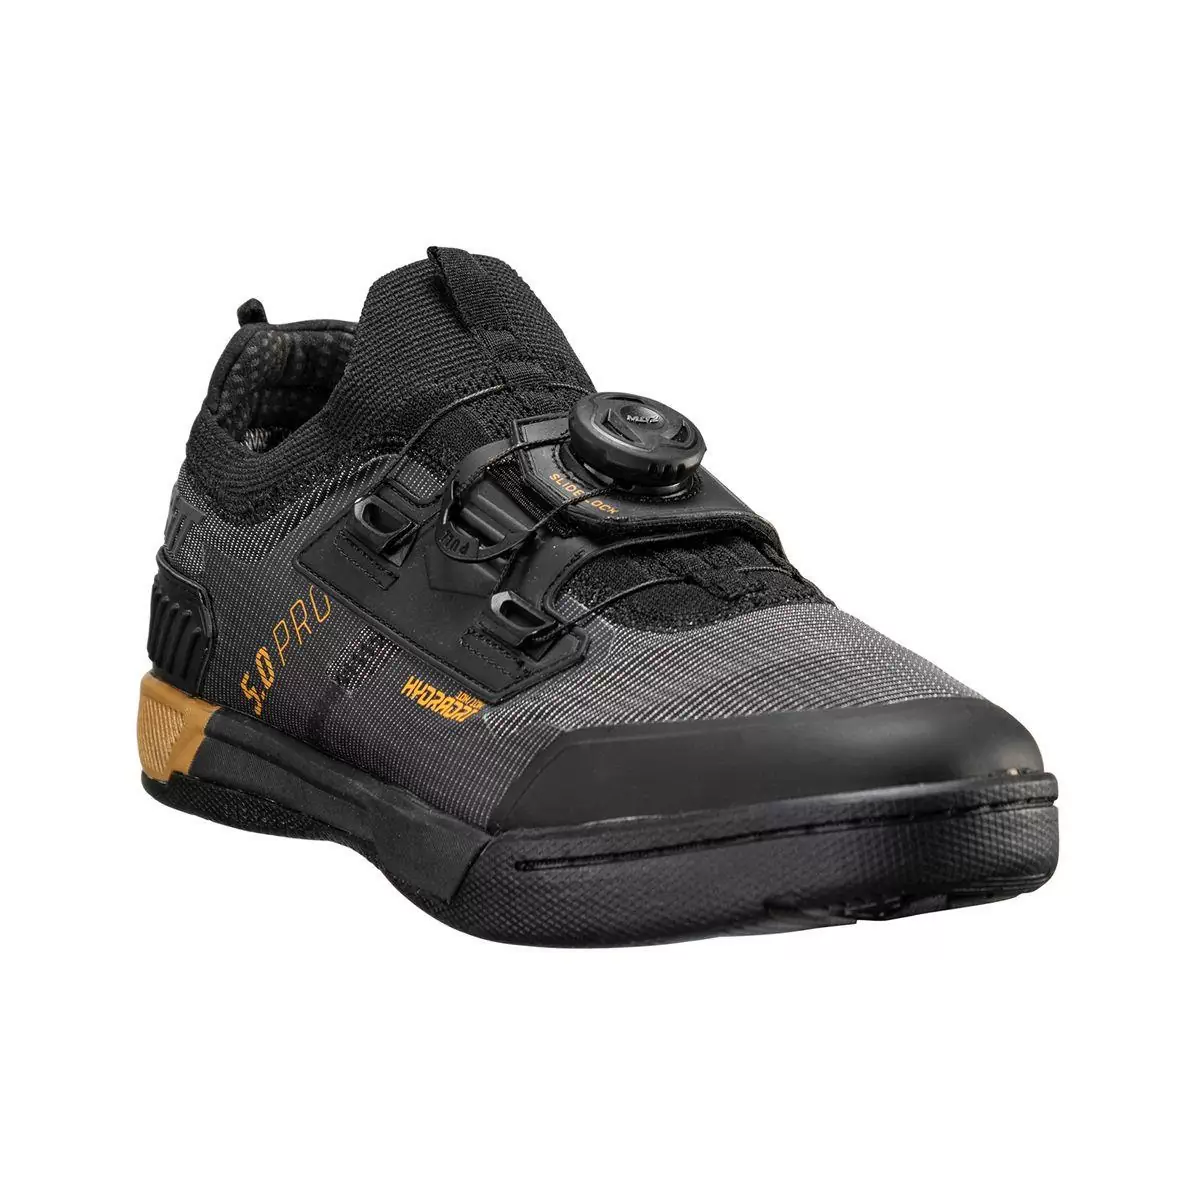 Chaussures VTT imperméables HydraDri ProClip 5.0 noir taille 38,5 - image